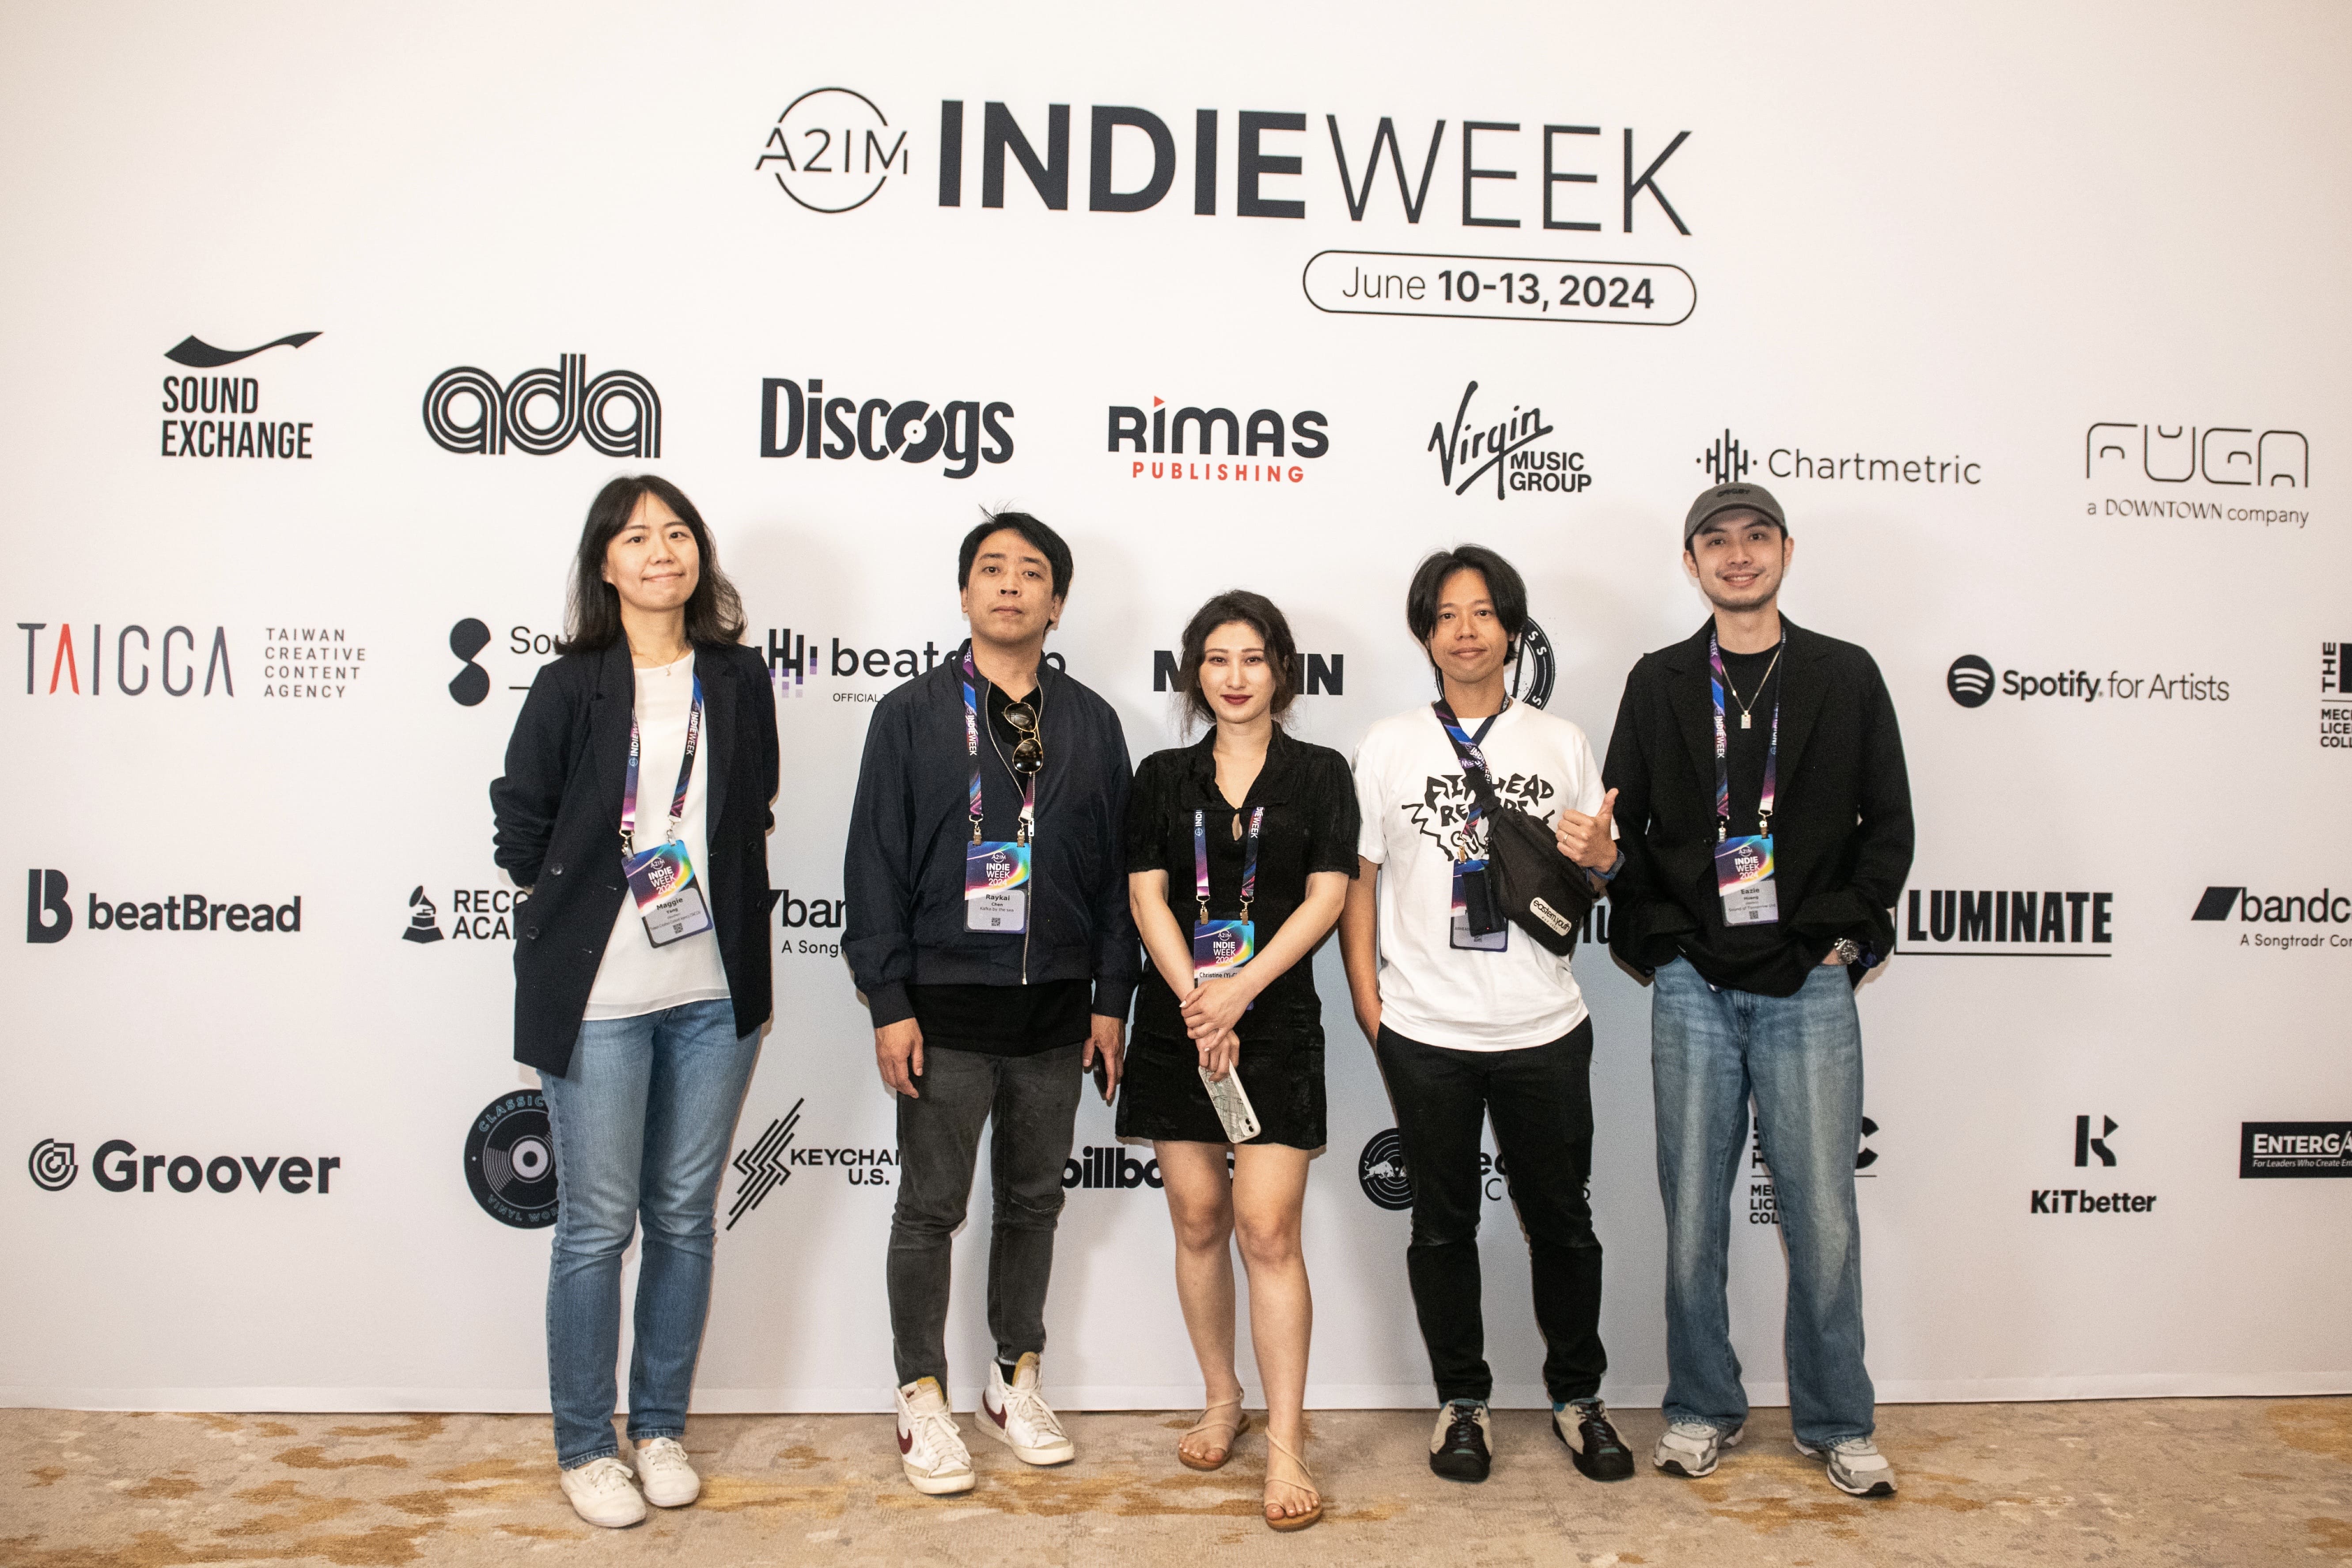 與全球獨立音樂產業接軌！ A2IM Indie Week 首辦臺灣專場熱鬧非凡 